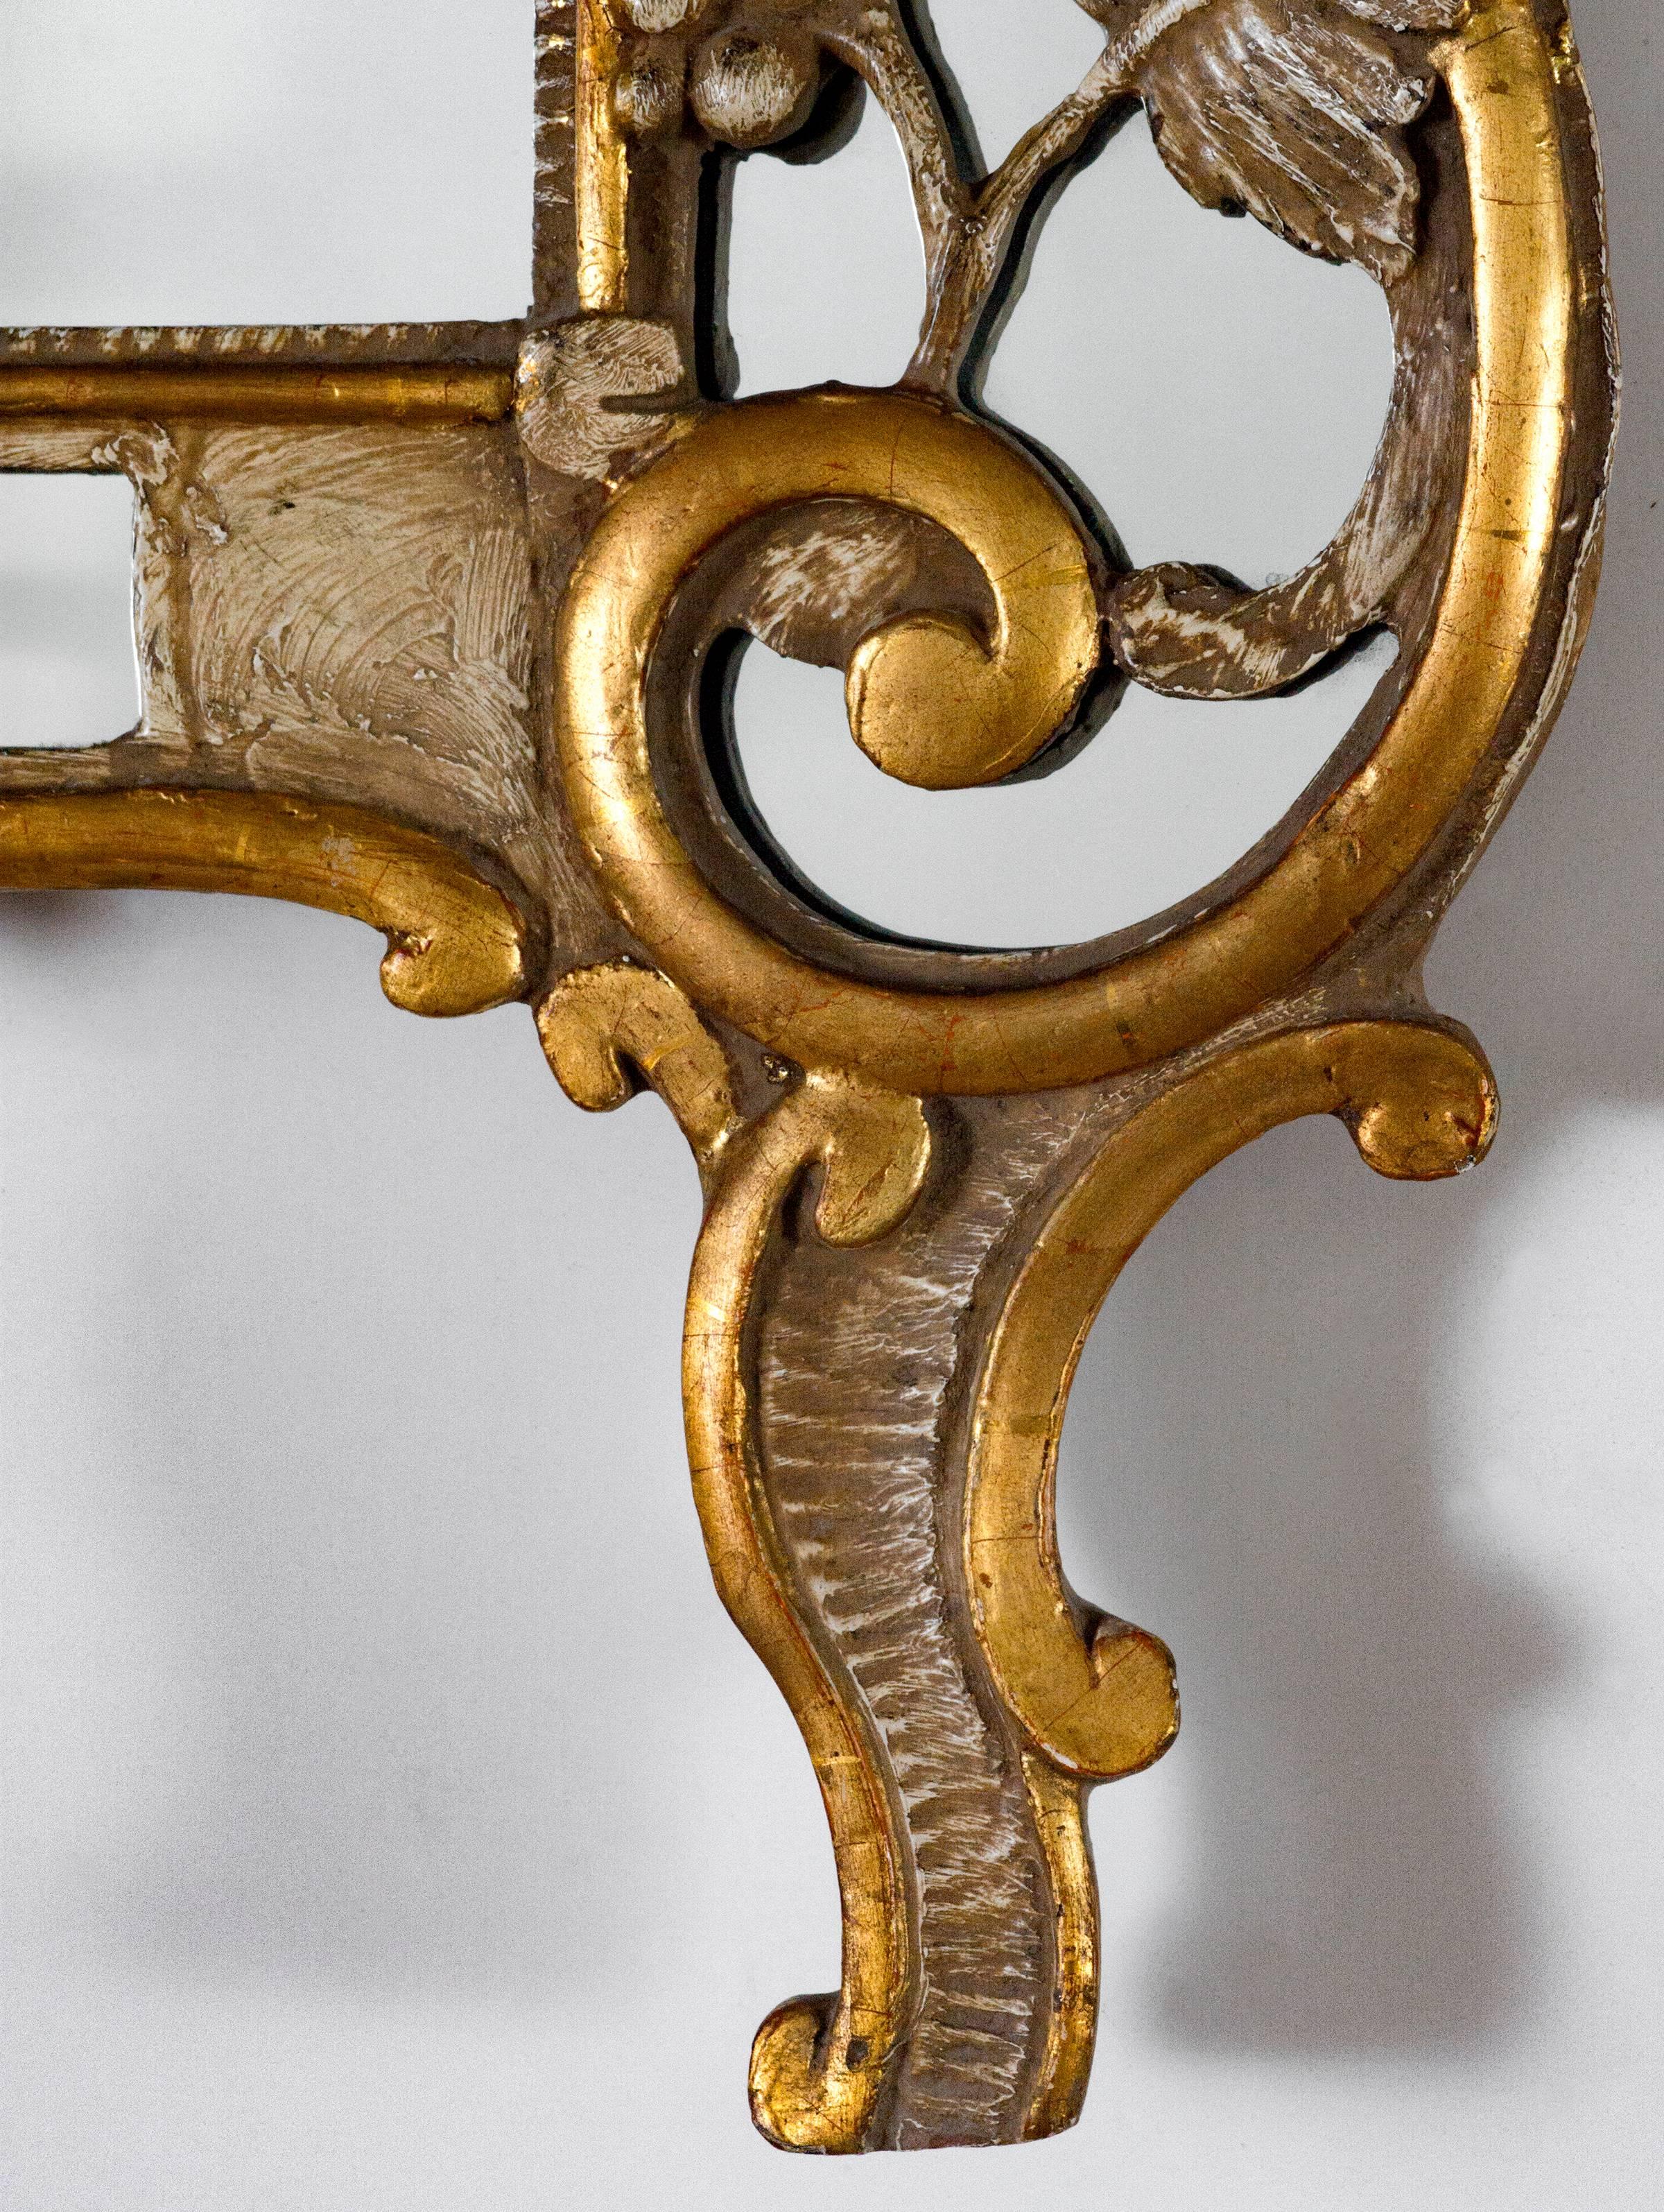 Spiegel mit Korbaufsatz in antikem Weiß mit goldenem Blattmetallbesatz
Maße: H 48